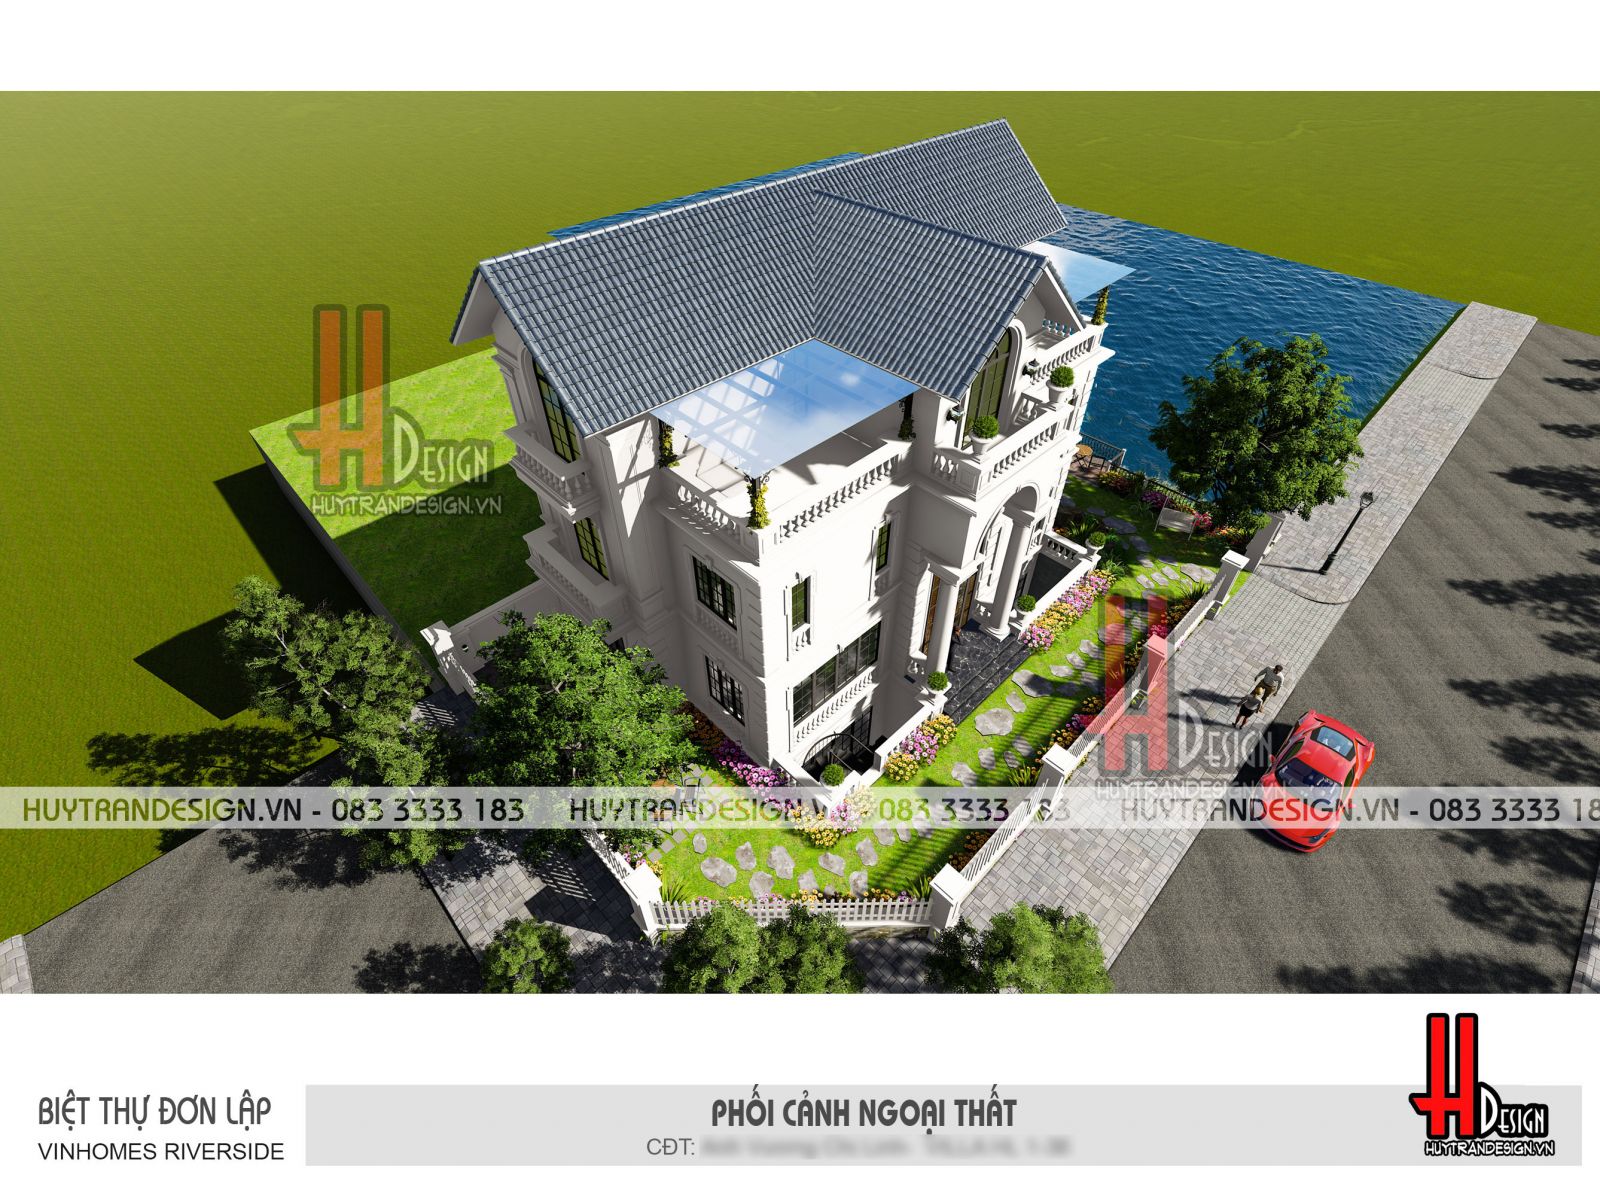 Mẫu thiết kế nhà 3 tầng đẹp - Huytrandesign tư vấn, thiết kế, thi công, sửa chữa nhà đẹp tại Long Biên, Hà Nội - v13